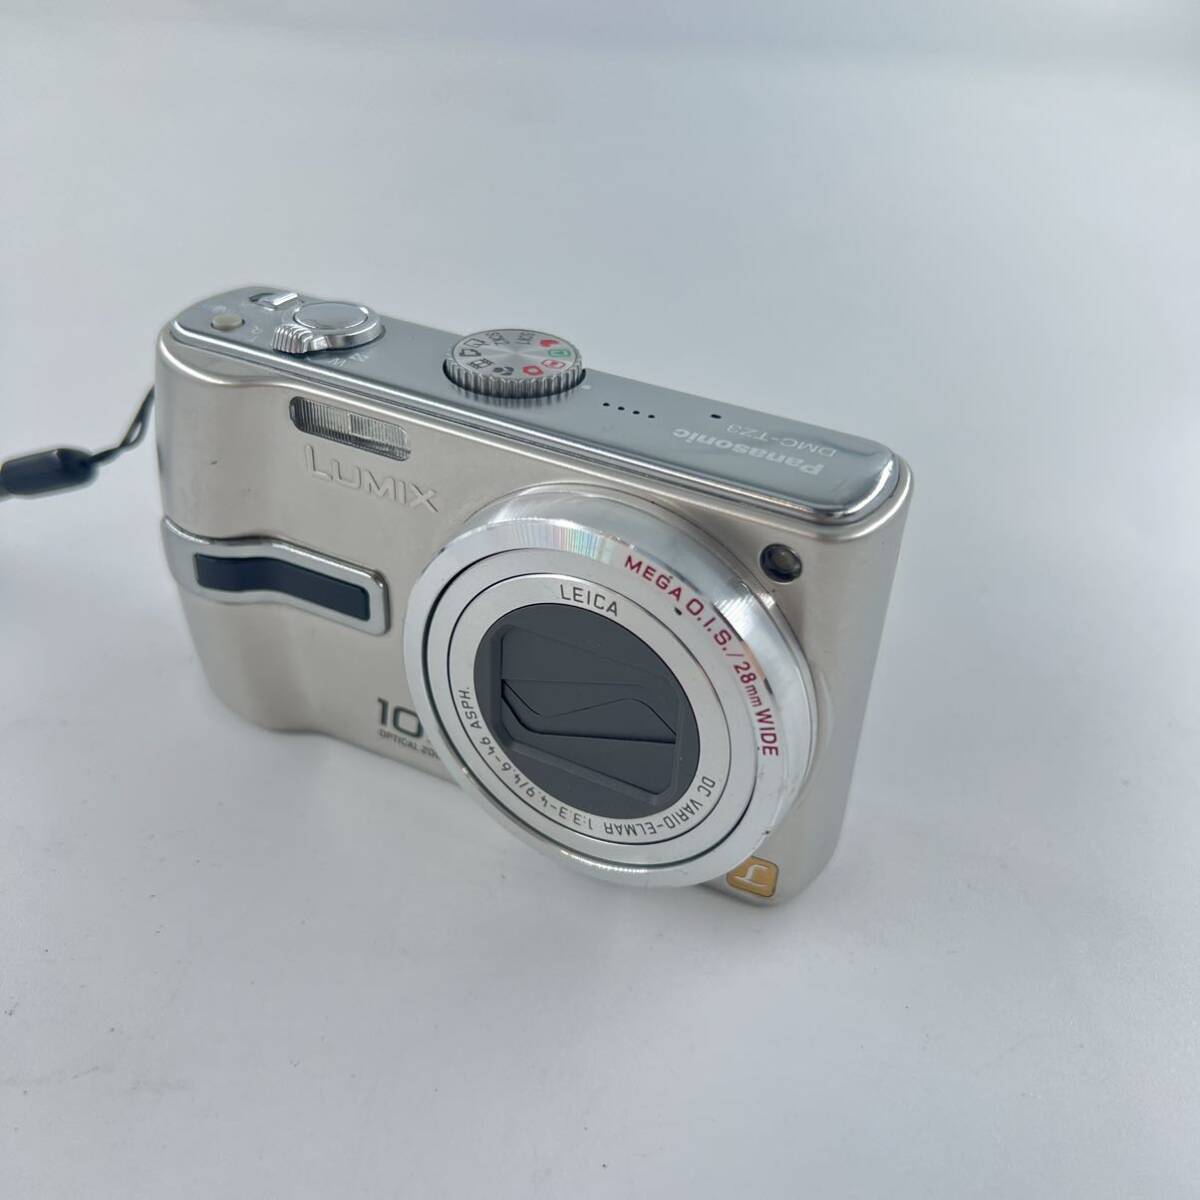 K4 LUMIX 10x 1:3.3-4.9/4.6 バッテリー付き コンパクトデジタルカメラ コンパクト デジカメ デジタルカメラ シルバーの画像1